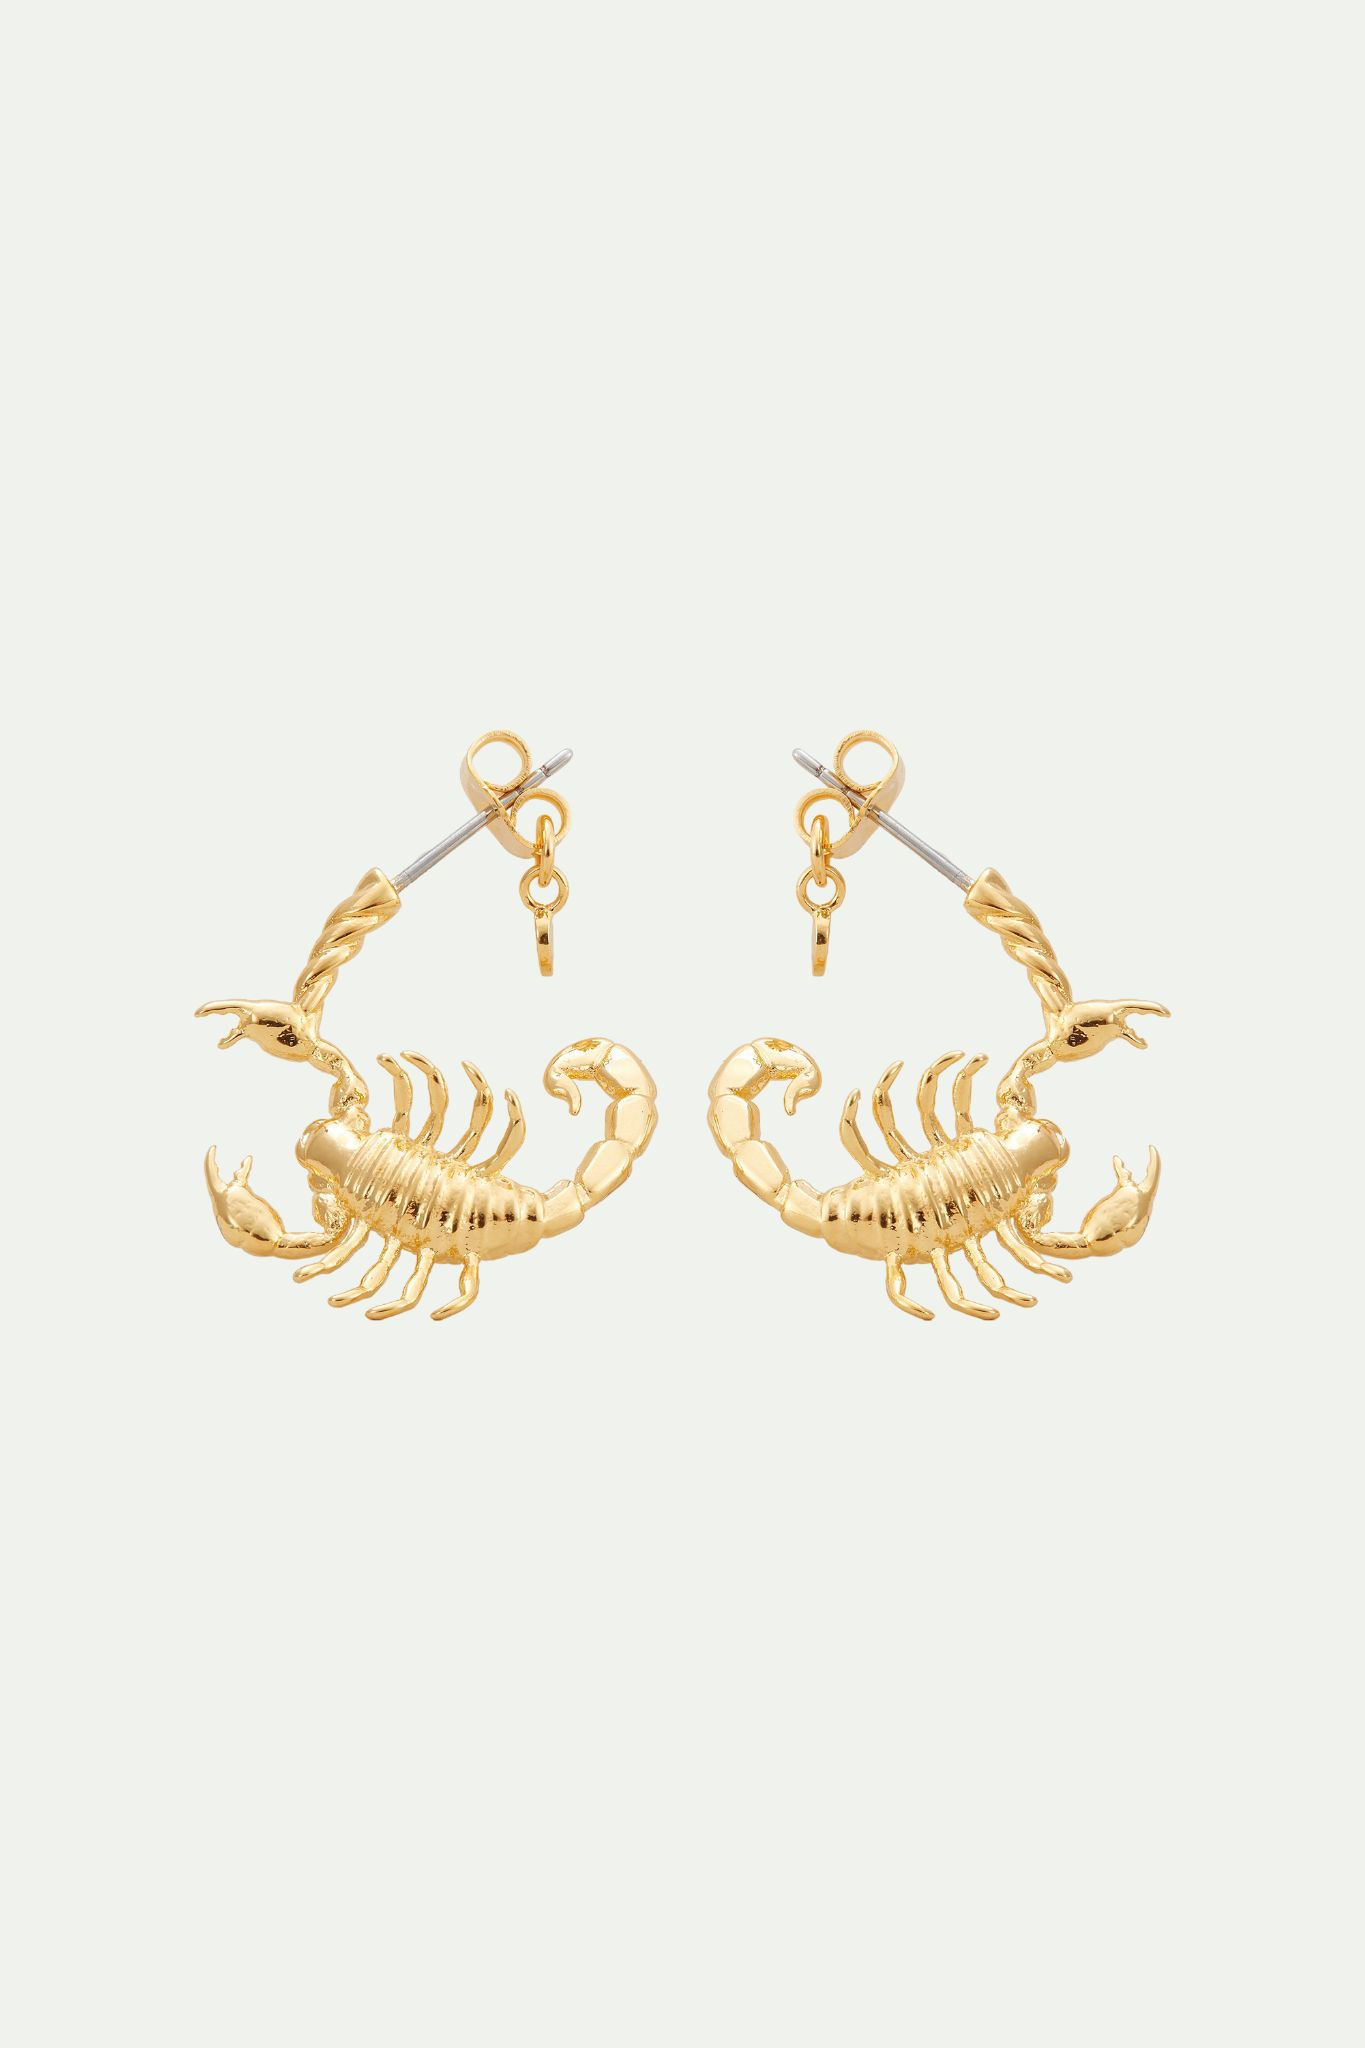 Scorpio zodiac sign hoops earrings